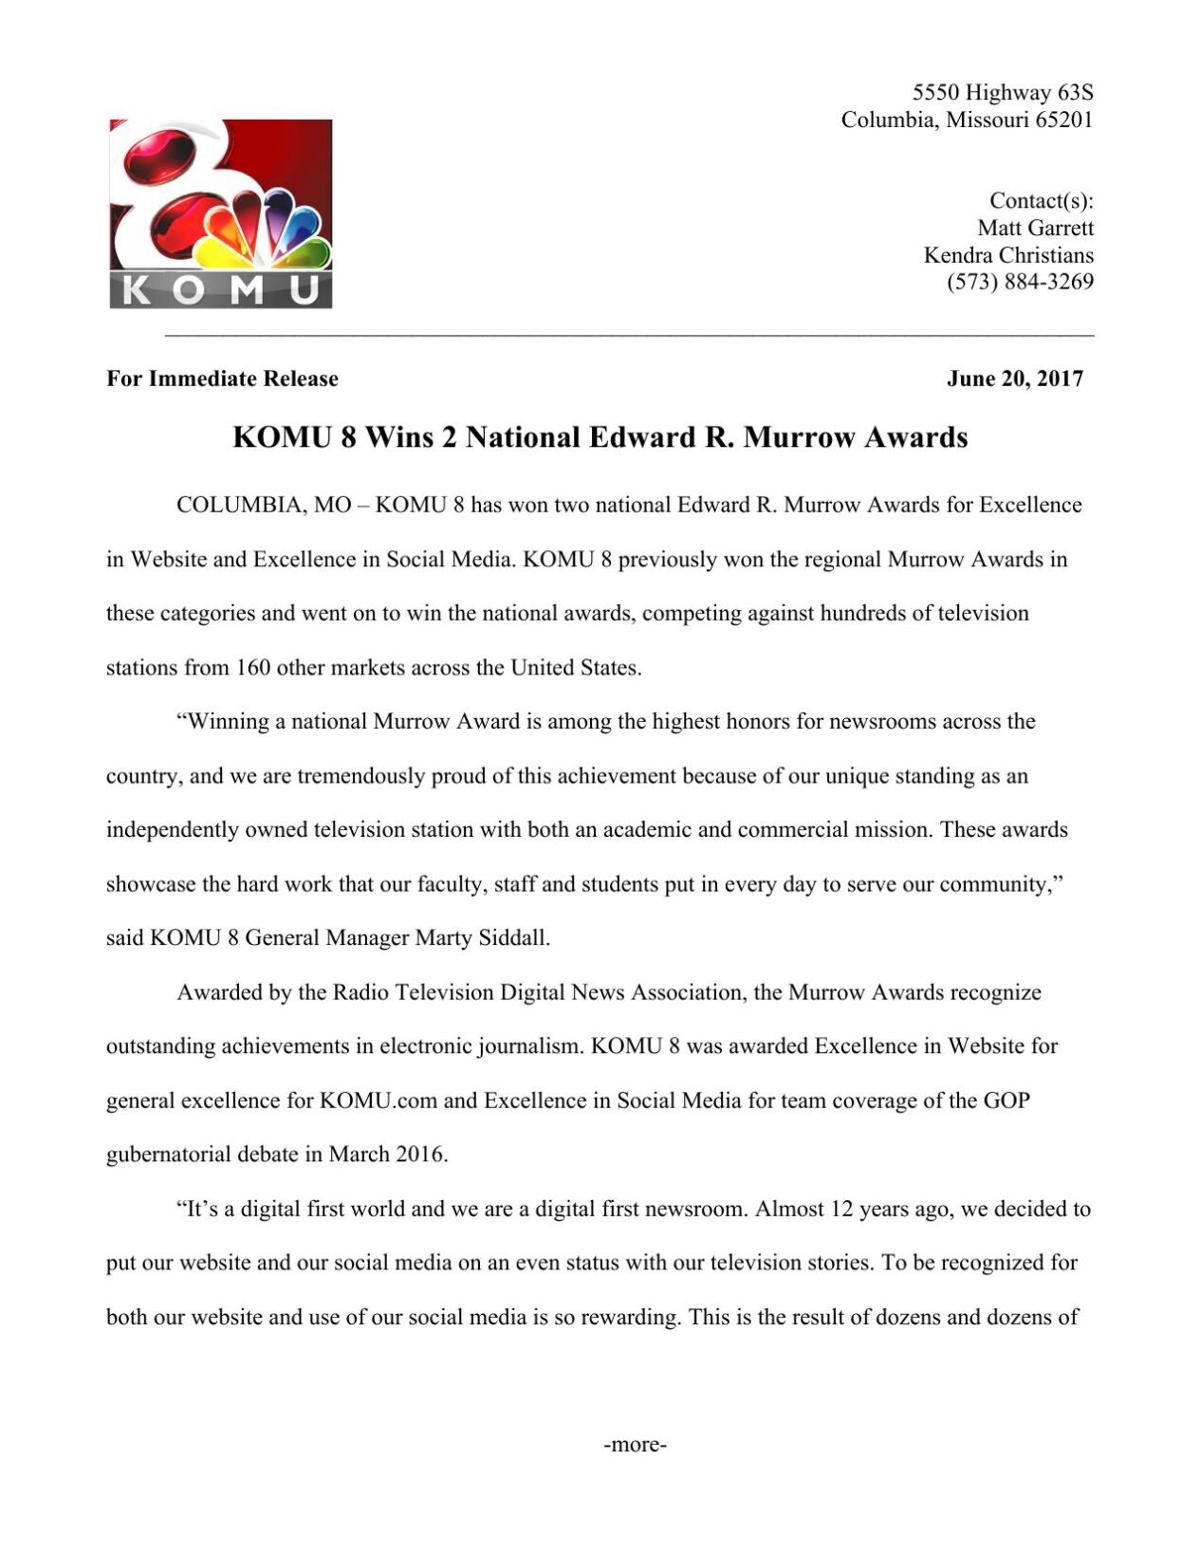 KOMU 8 2017 Edward R. Murrow Awards